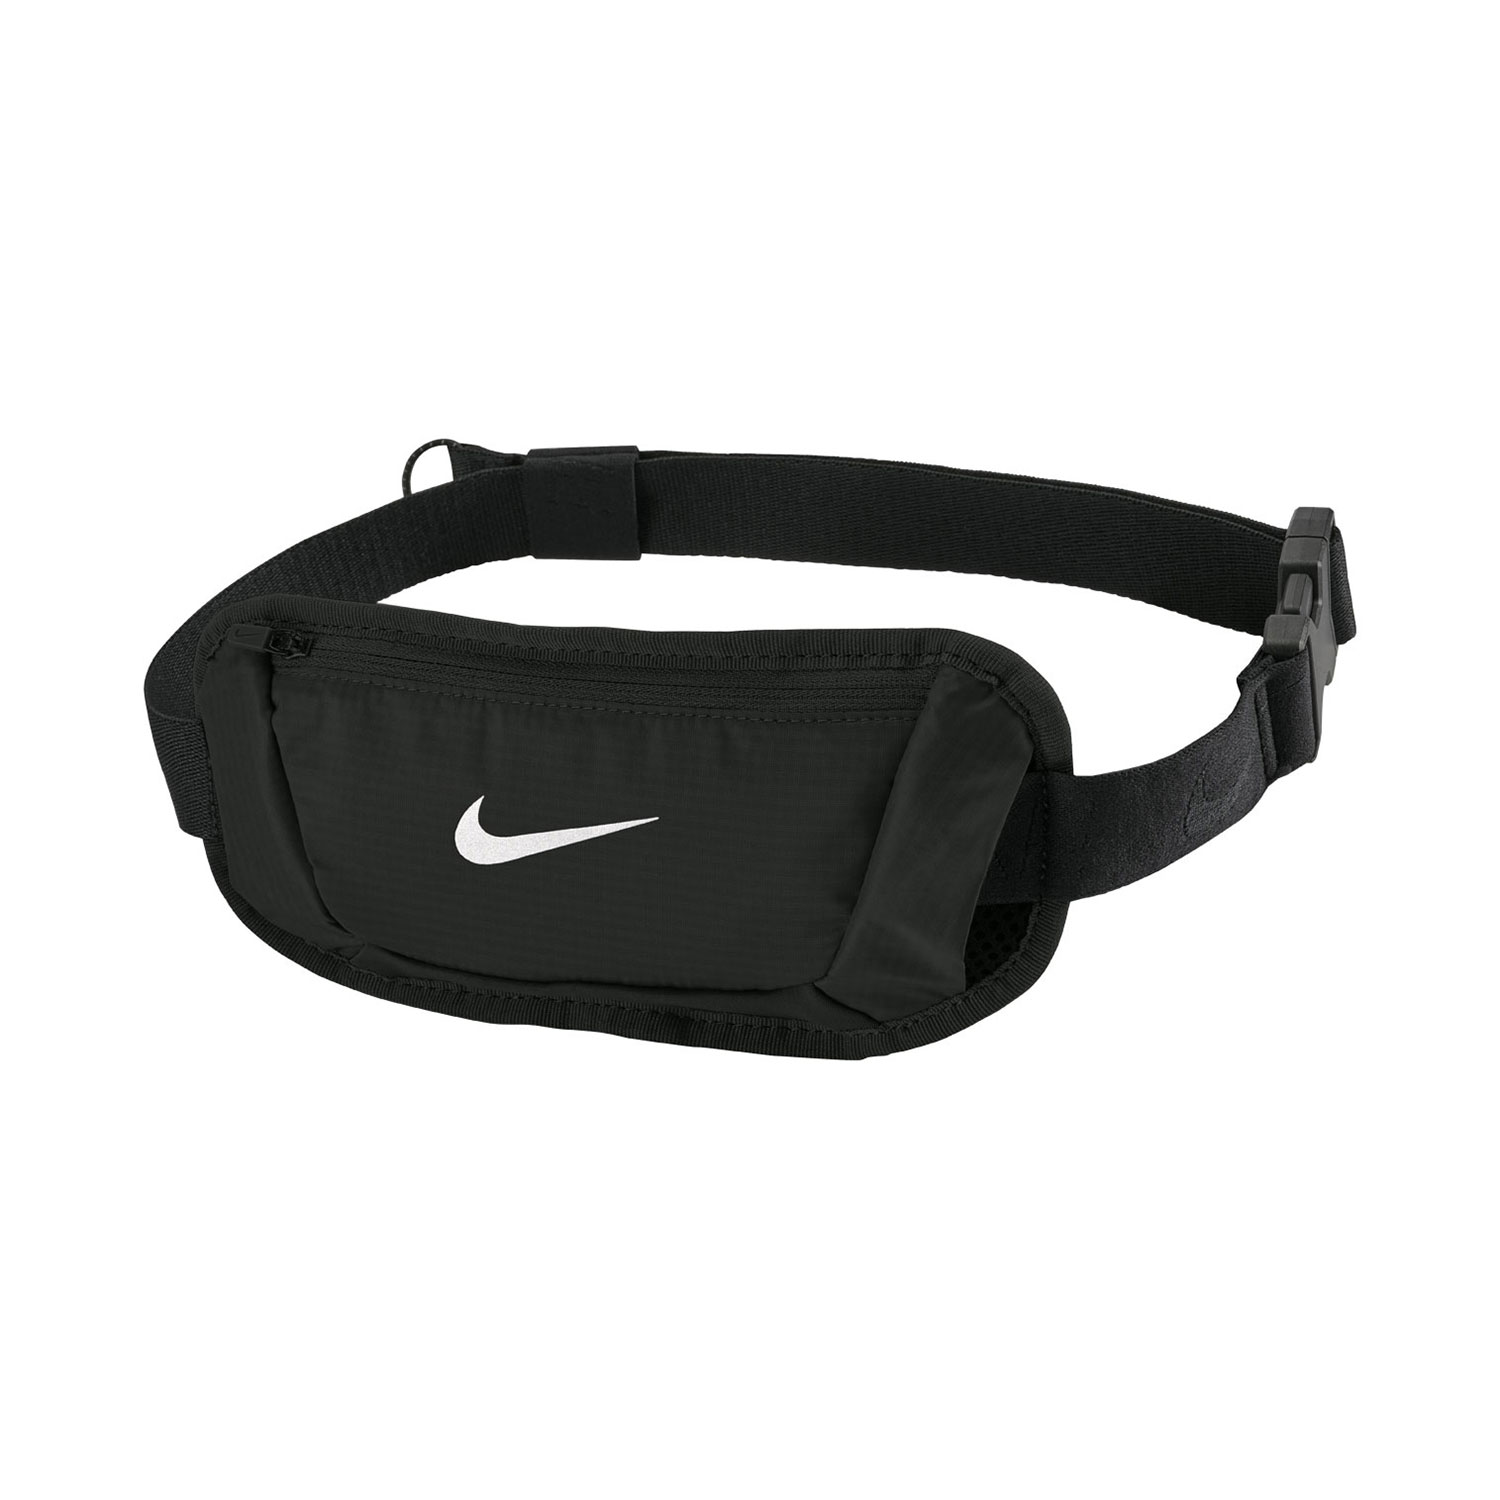 Nike Challenger 2.0 Small Running Waistpack - Black/White